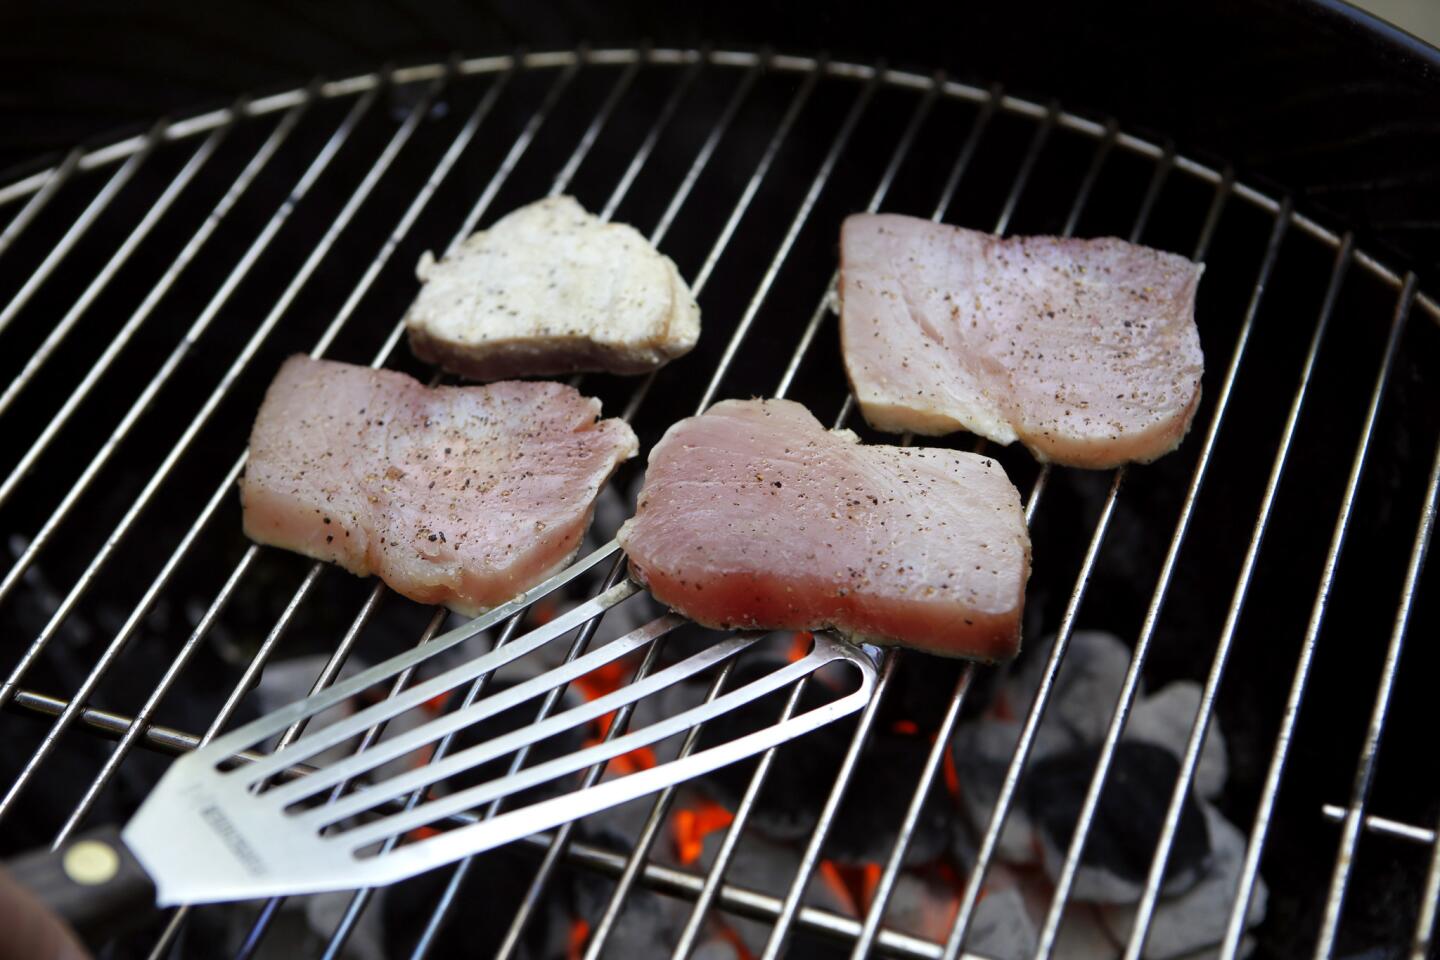 Albacore tuna hits the grill for bruschetta alla matalotta.